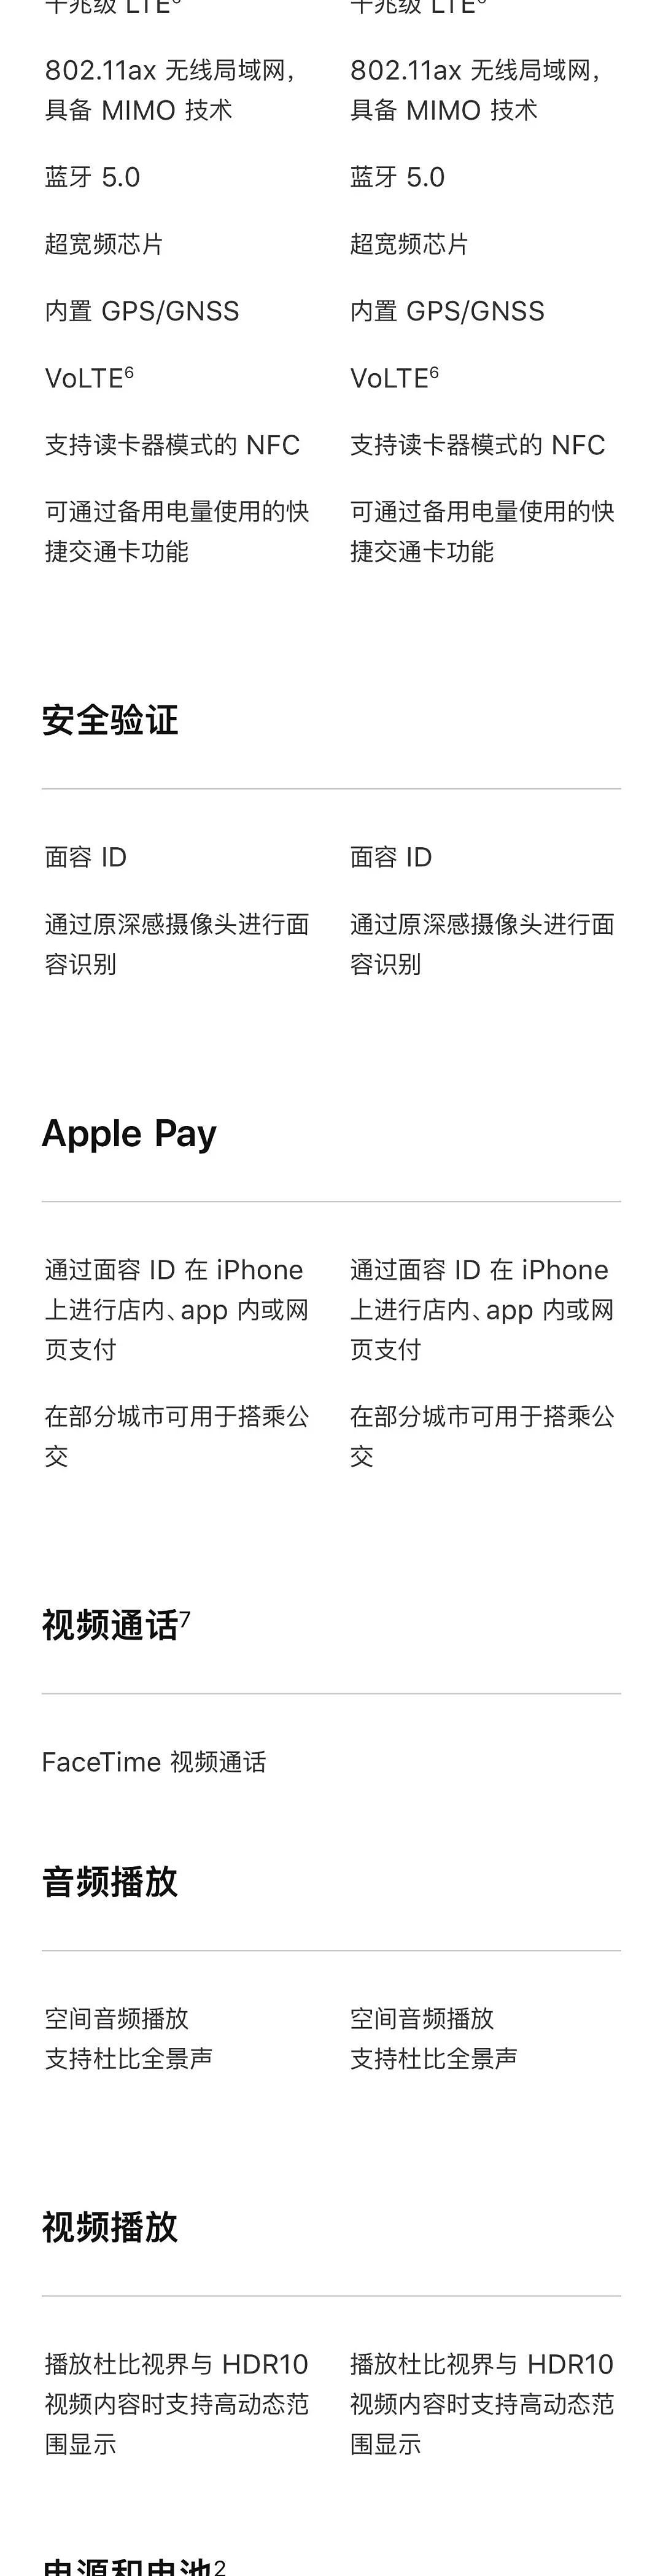 一张图看iPhone 11 Pro和iPhone 11 Pro Max详细规格对比，差价900元差在哪里？ - 5